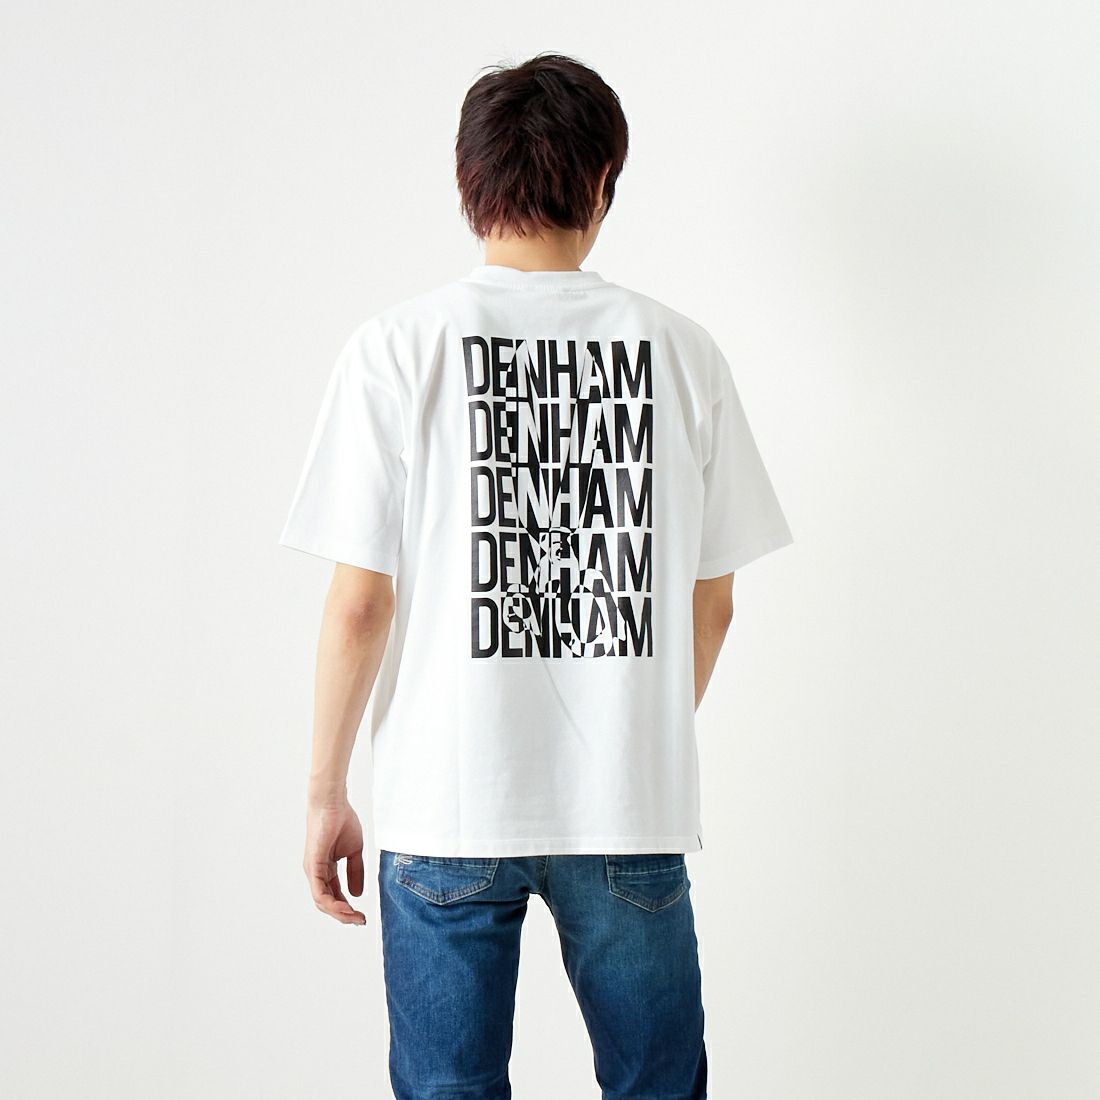 DENHAM [デンハム] シザーズロゴTシャツ [DENHAM-AND-SCISSORS] BLACK &&モデル身長：173cm 着用サイズ：M&&